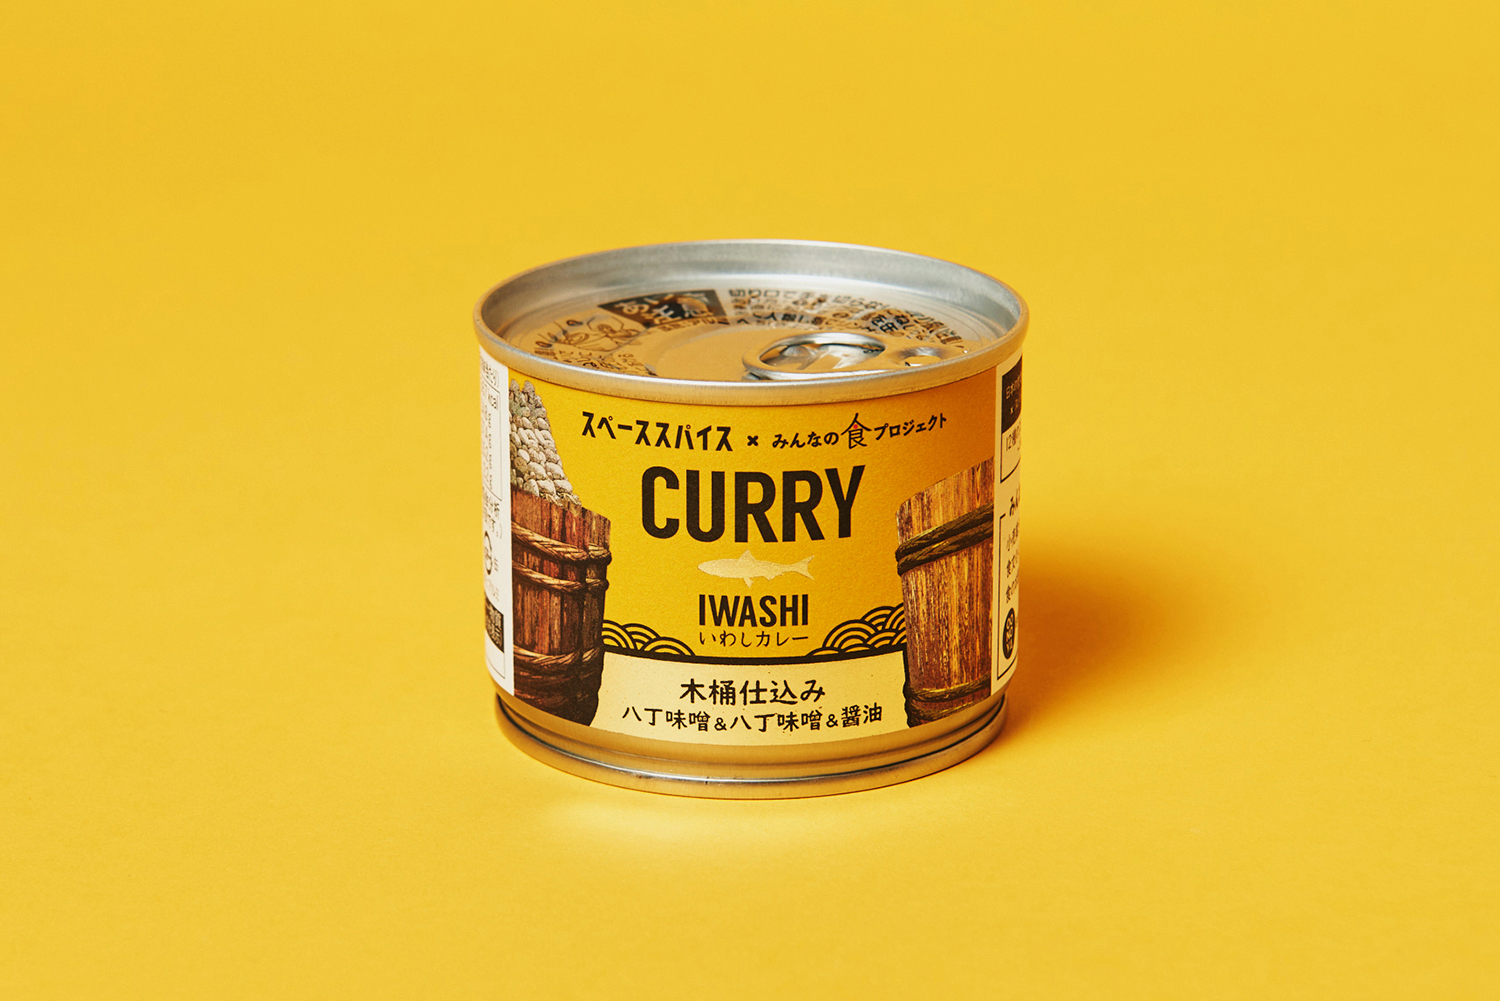 スパイスカレー缶IWASHI